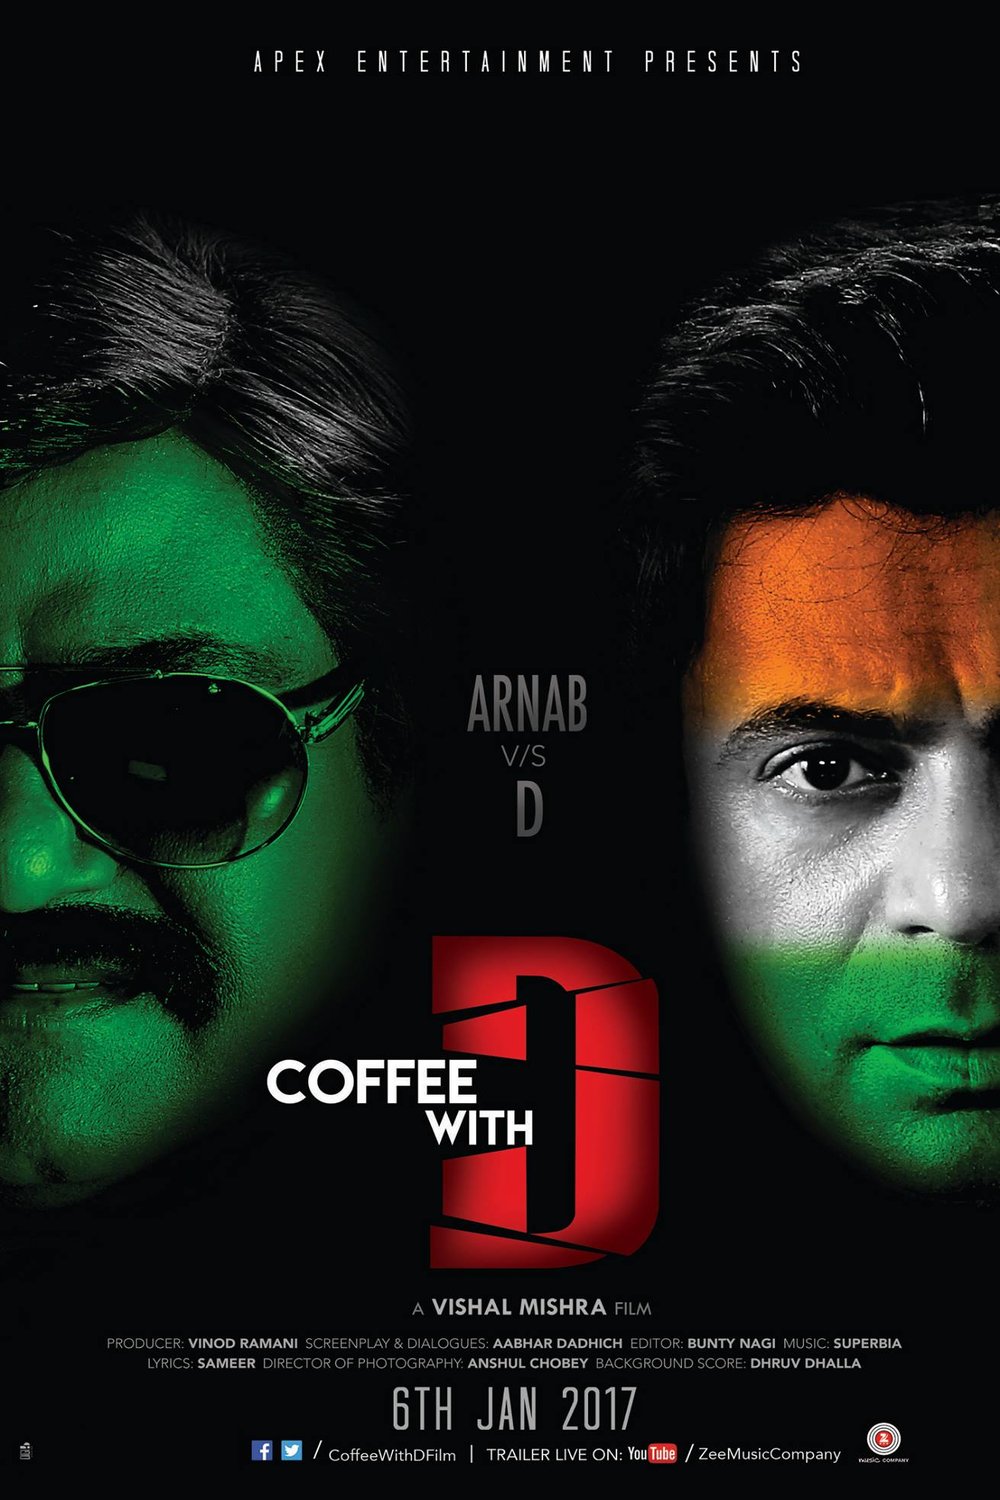 L'affiche originale du film Coffee with D en Hindi